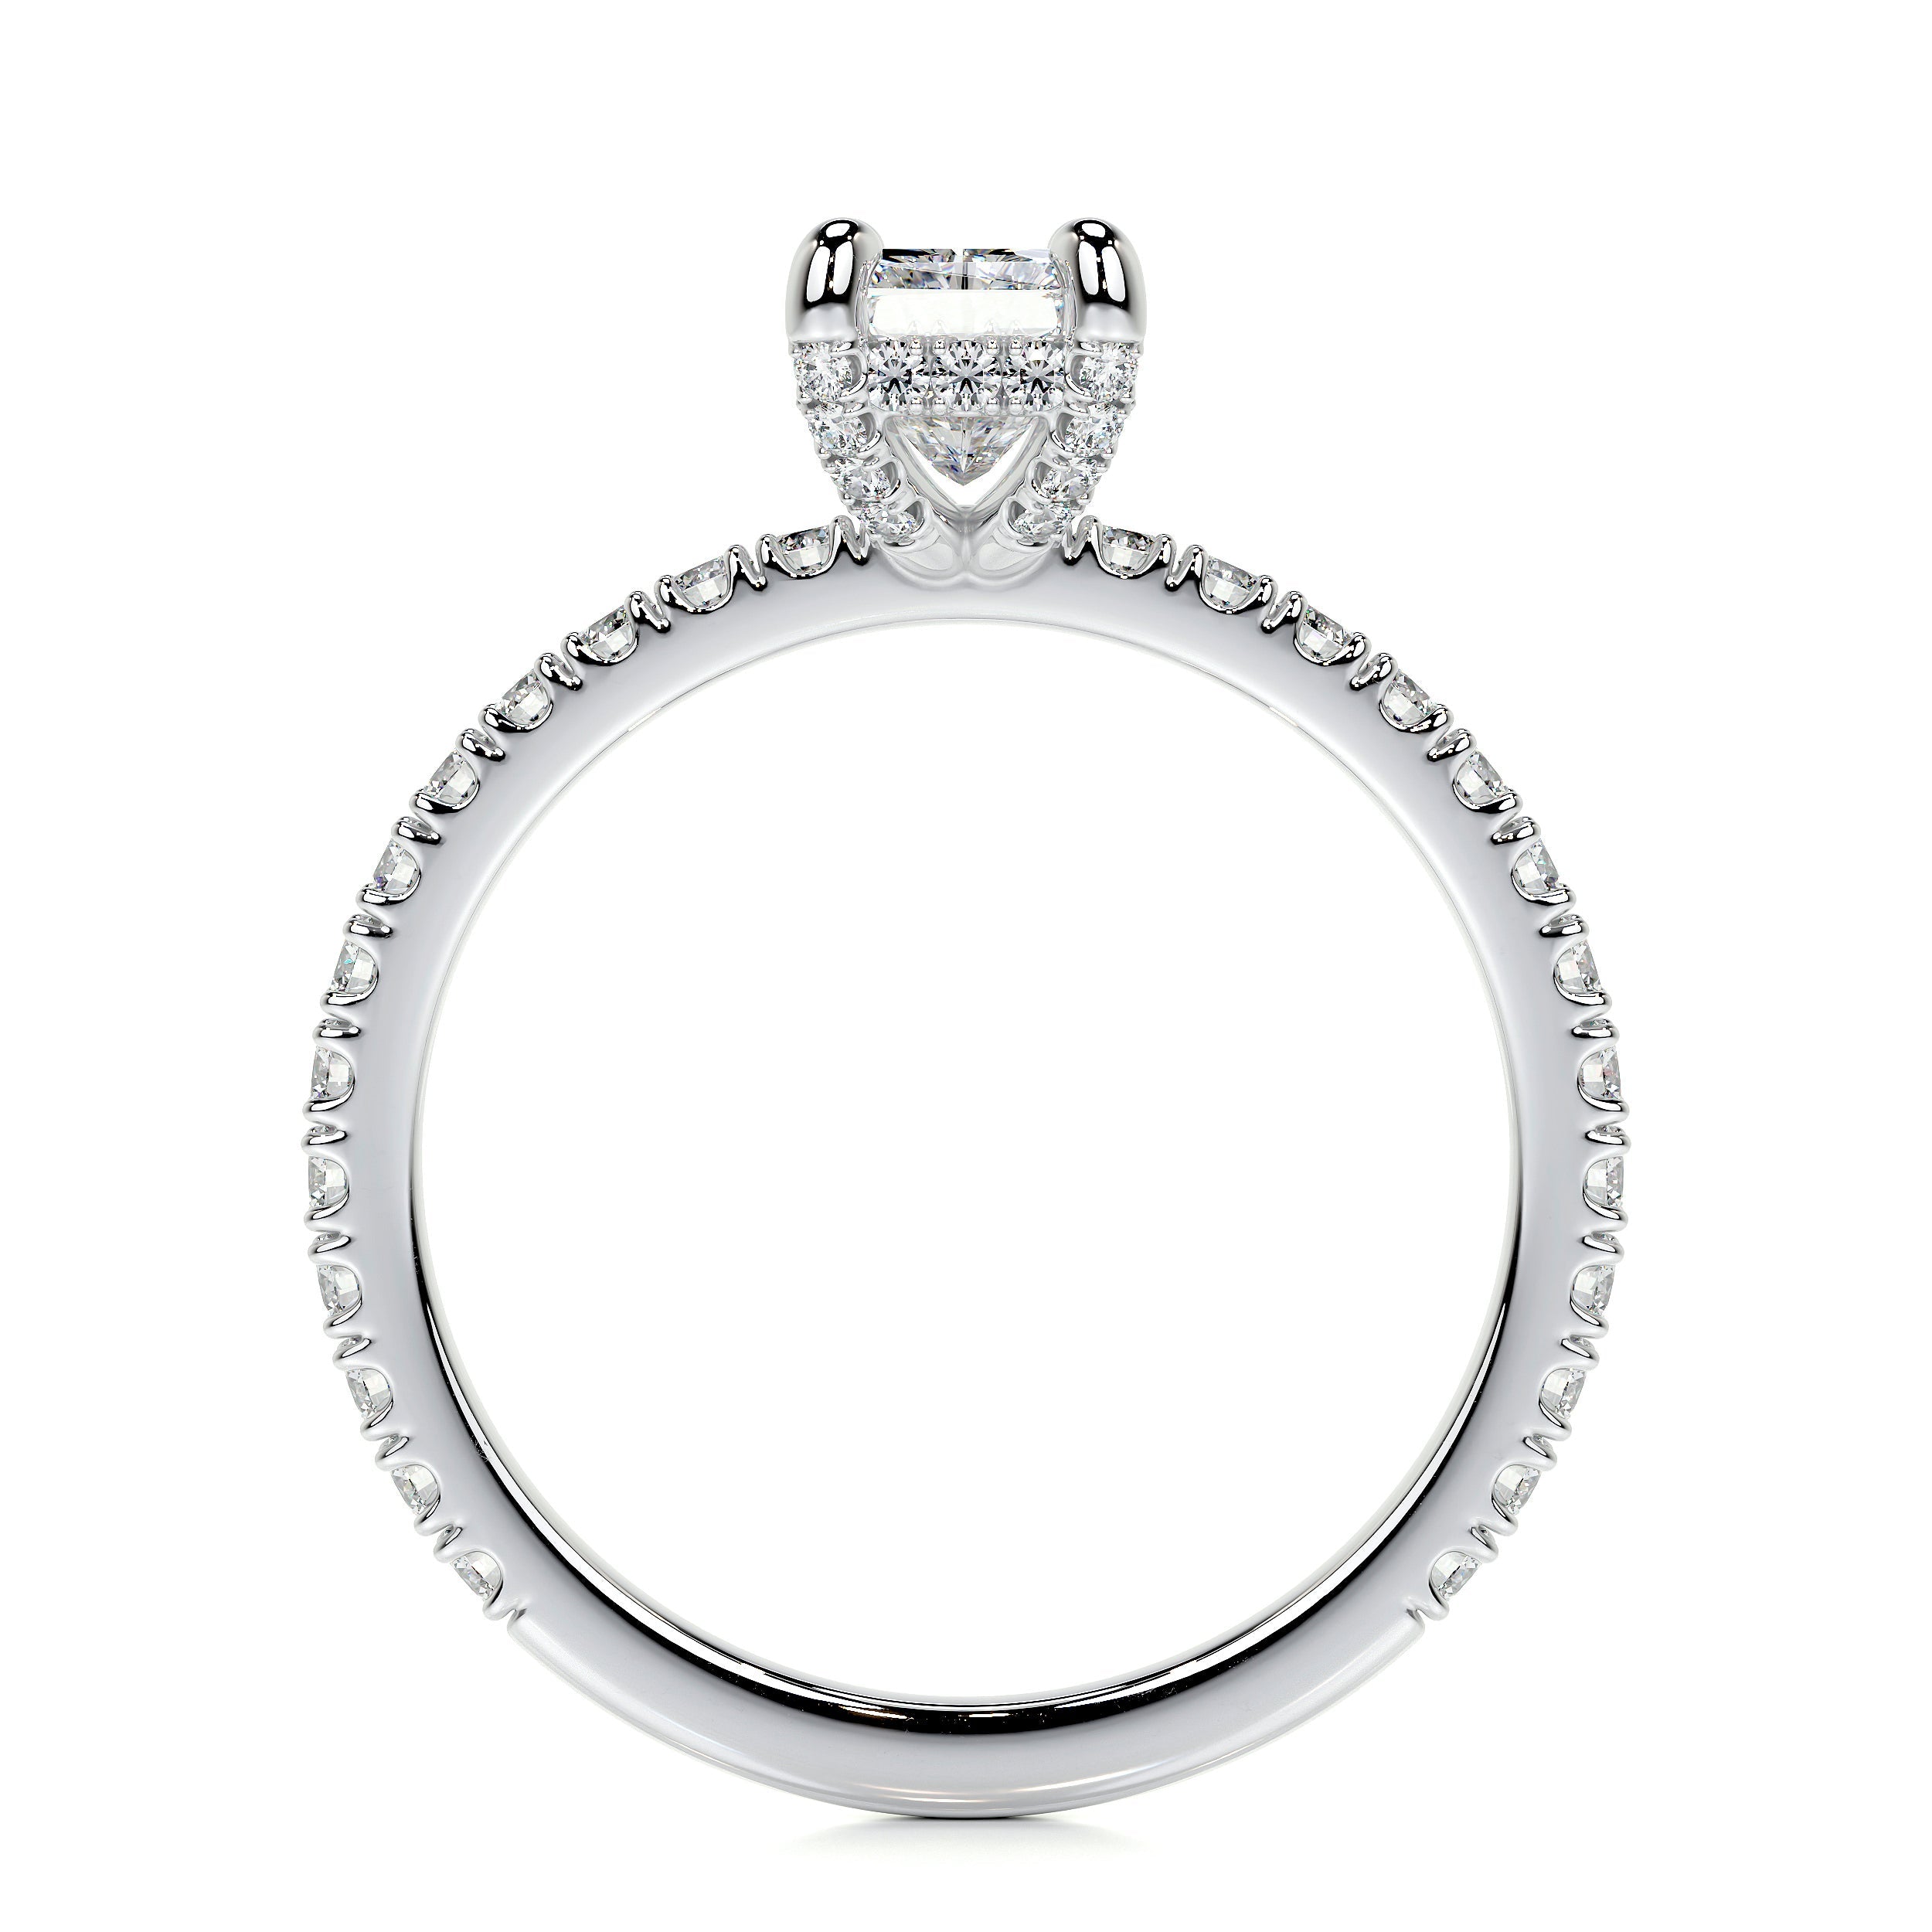 Deborah Lab Grown Diamond Ring   (1.5 Carat) -18K White Gold